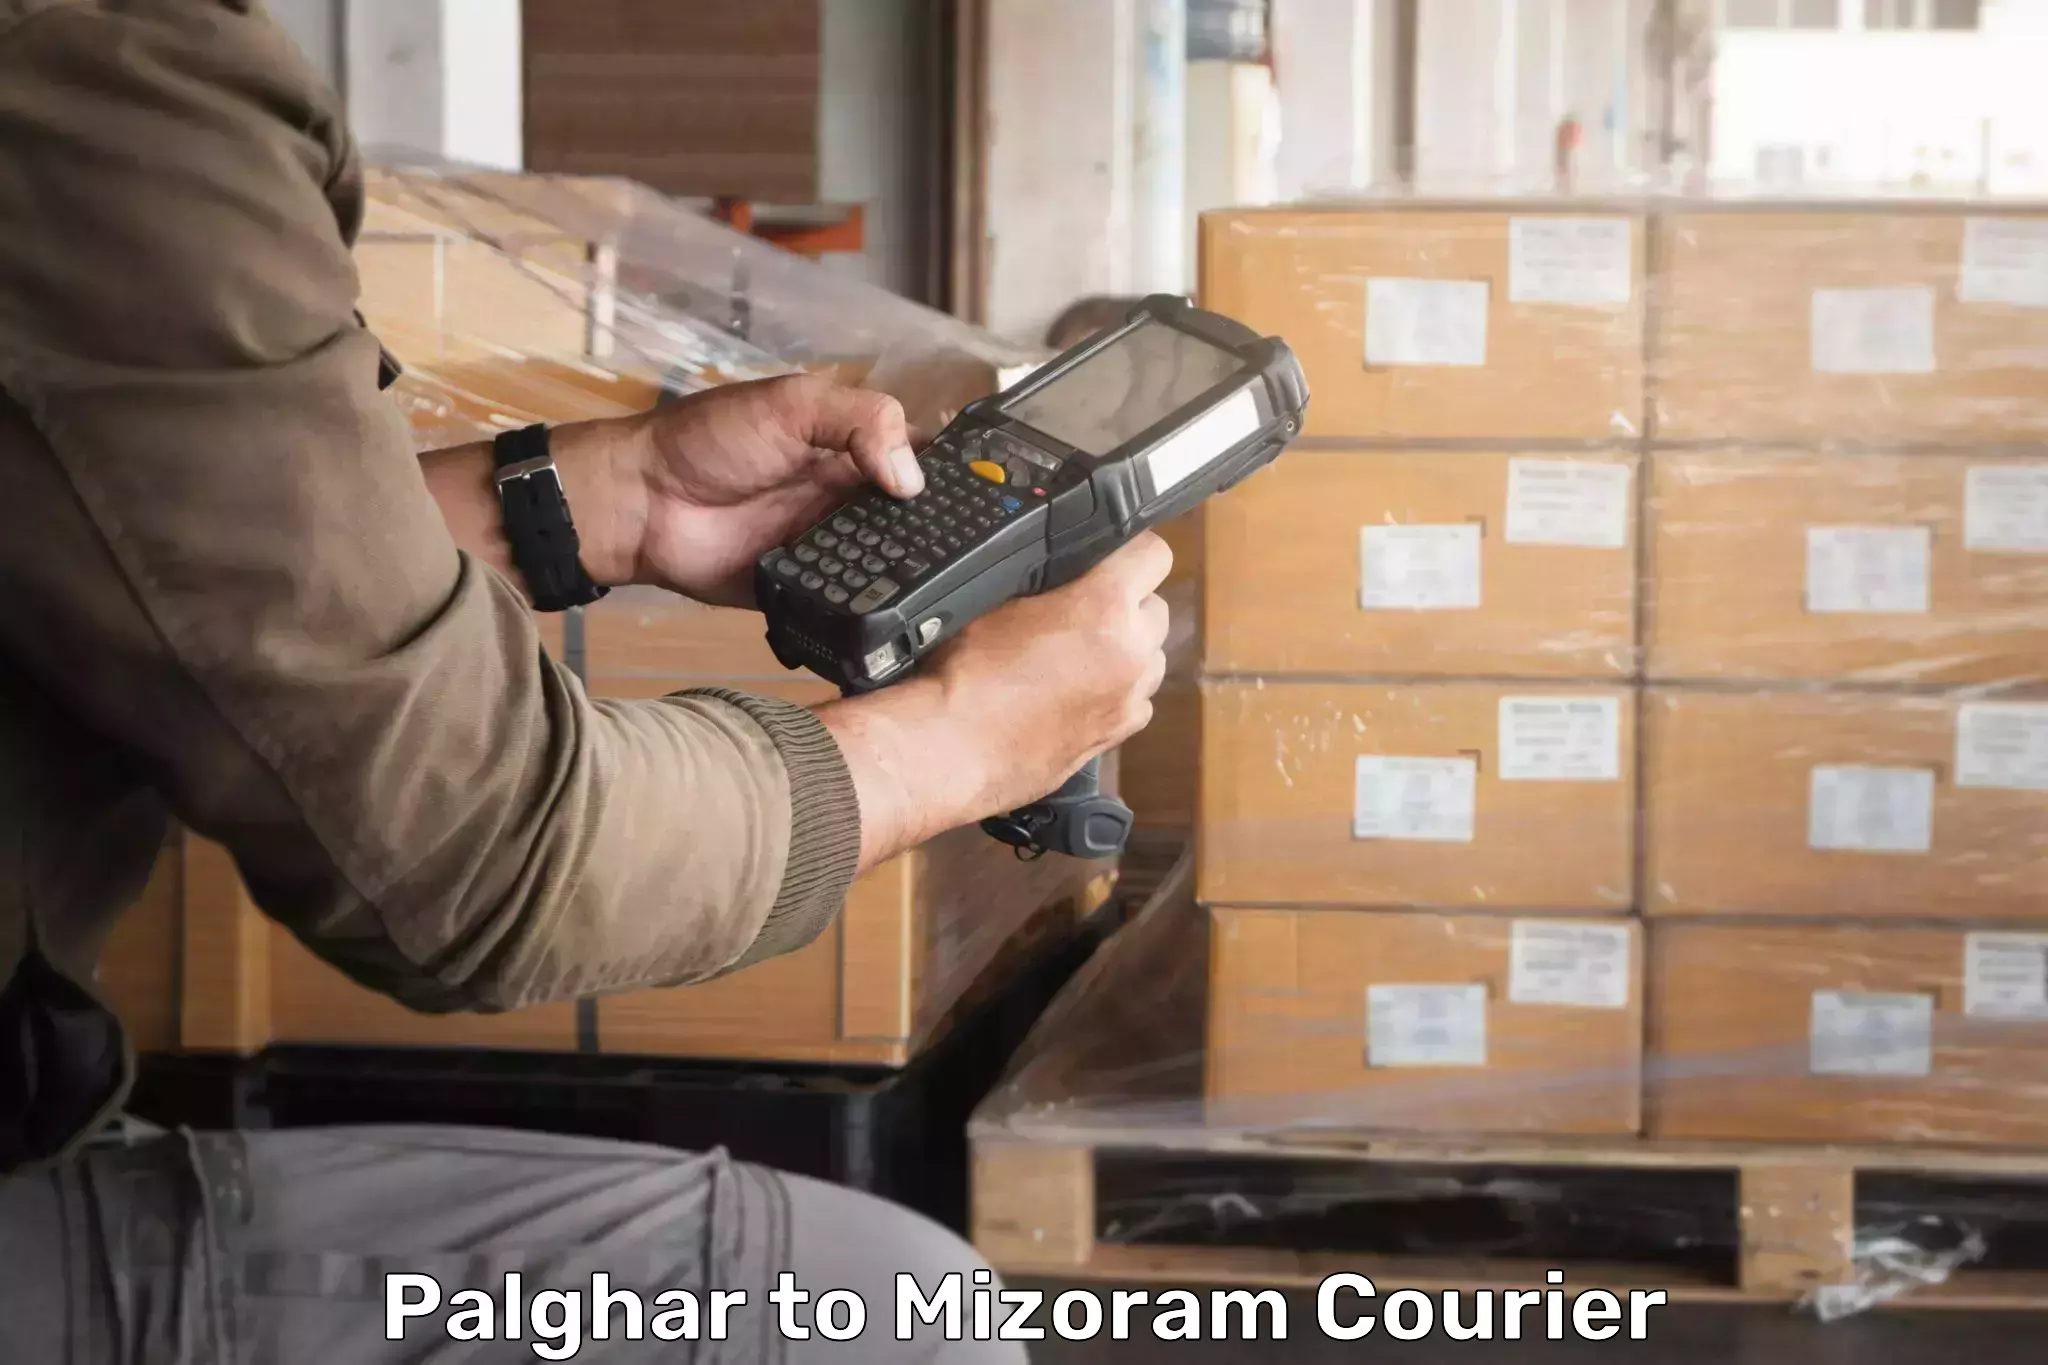 Advanced shipping network Palghar to Kolasib